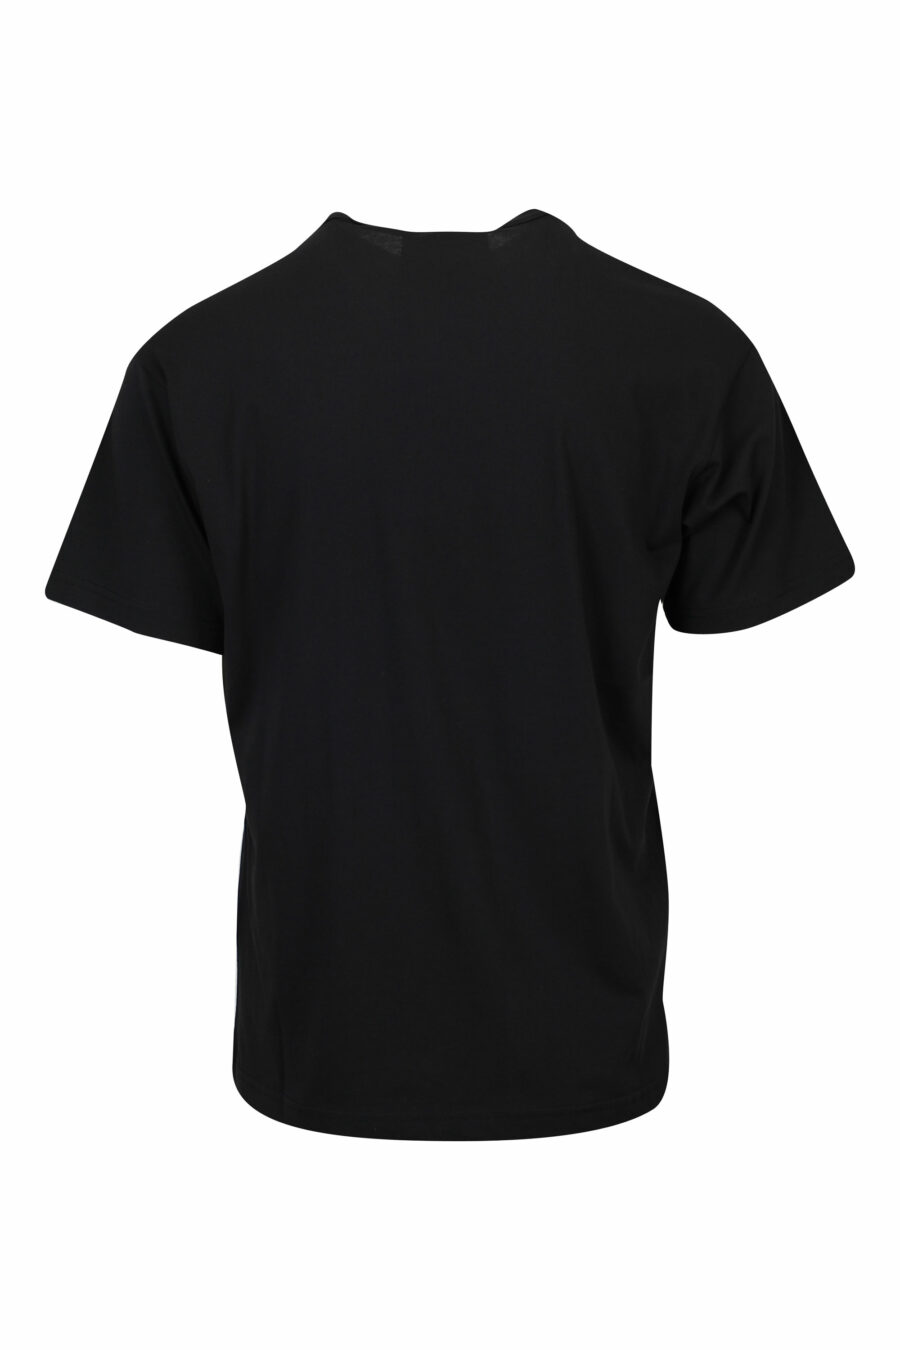 Camiseta negra con maxilogo azul claro - 8052019579925 1